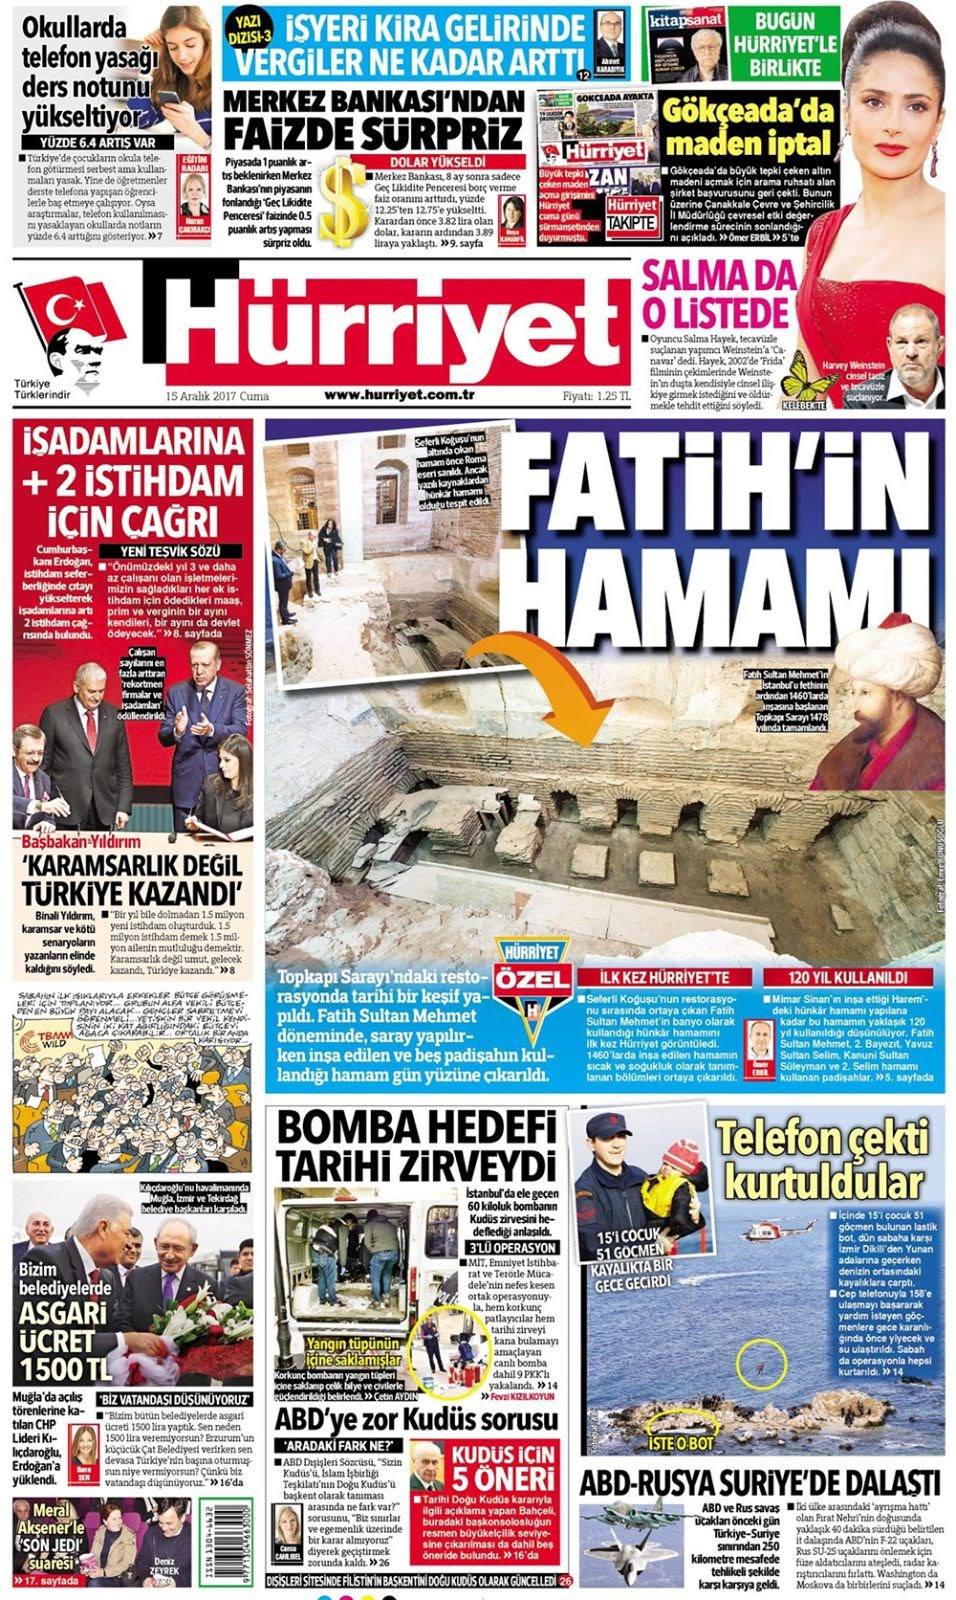 Gazete manşetleri Hürriyet - Sözcü - Sabah 15 Aralık 2017